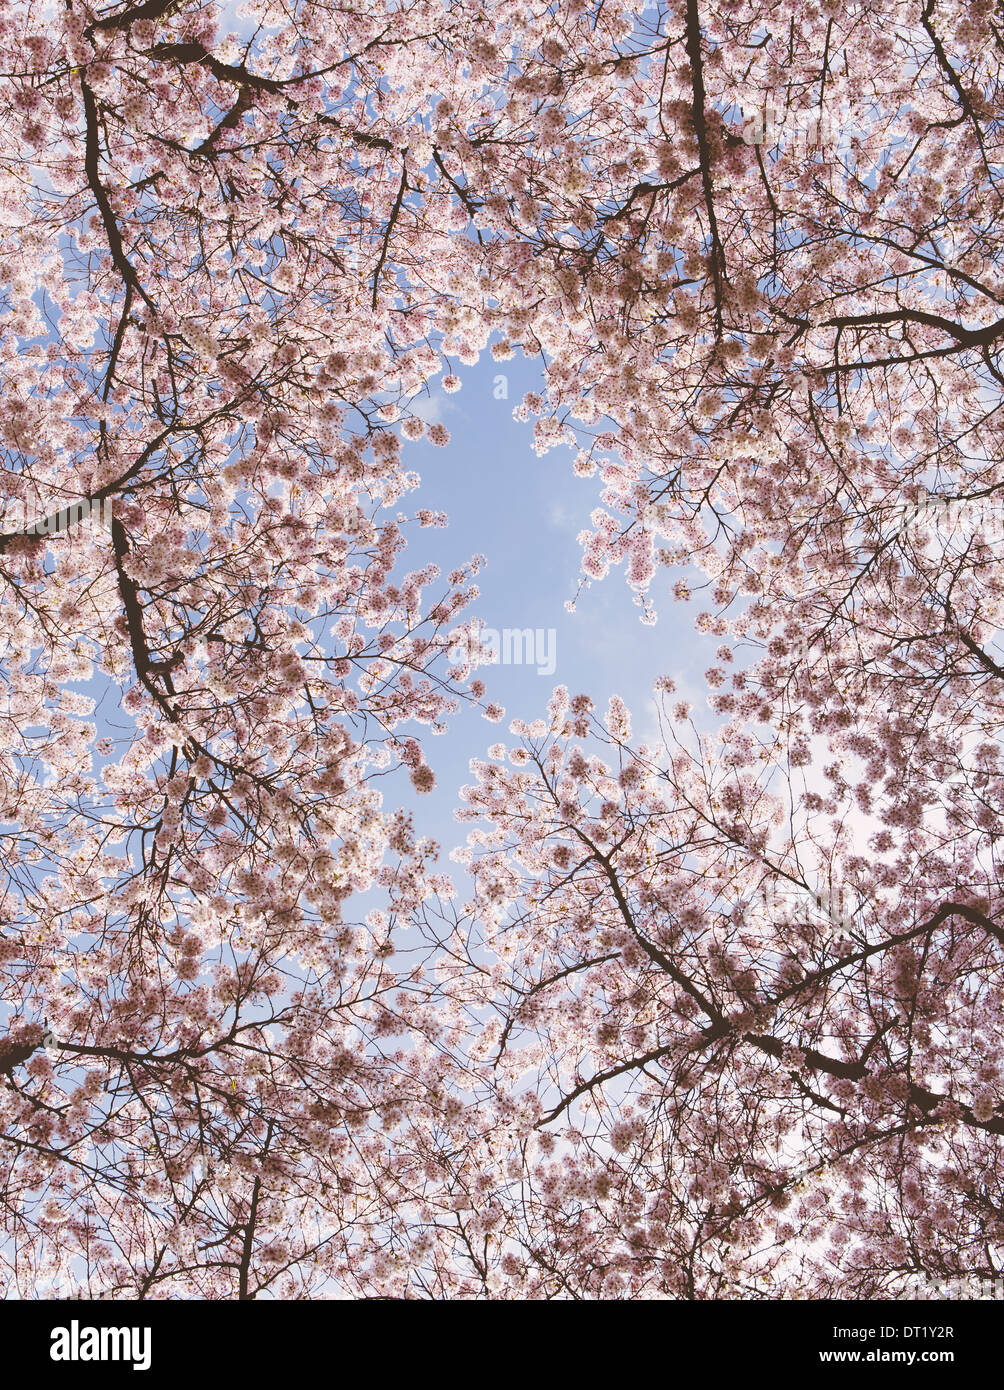 Rose mousseuse sur les cerisiers en fleurs de cerisiers au printemps dans l'état de Washington vue depuis le sol contre un ciel bleu Banque D'Images